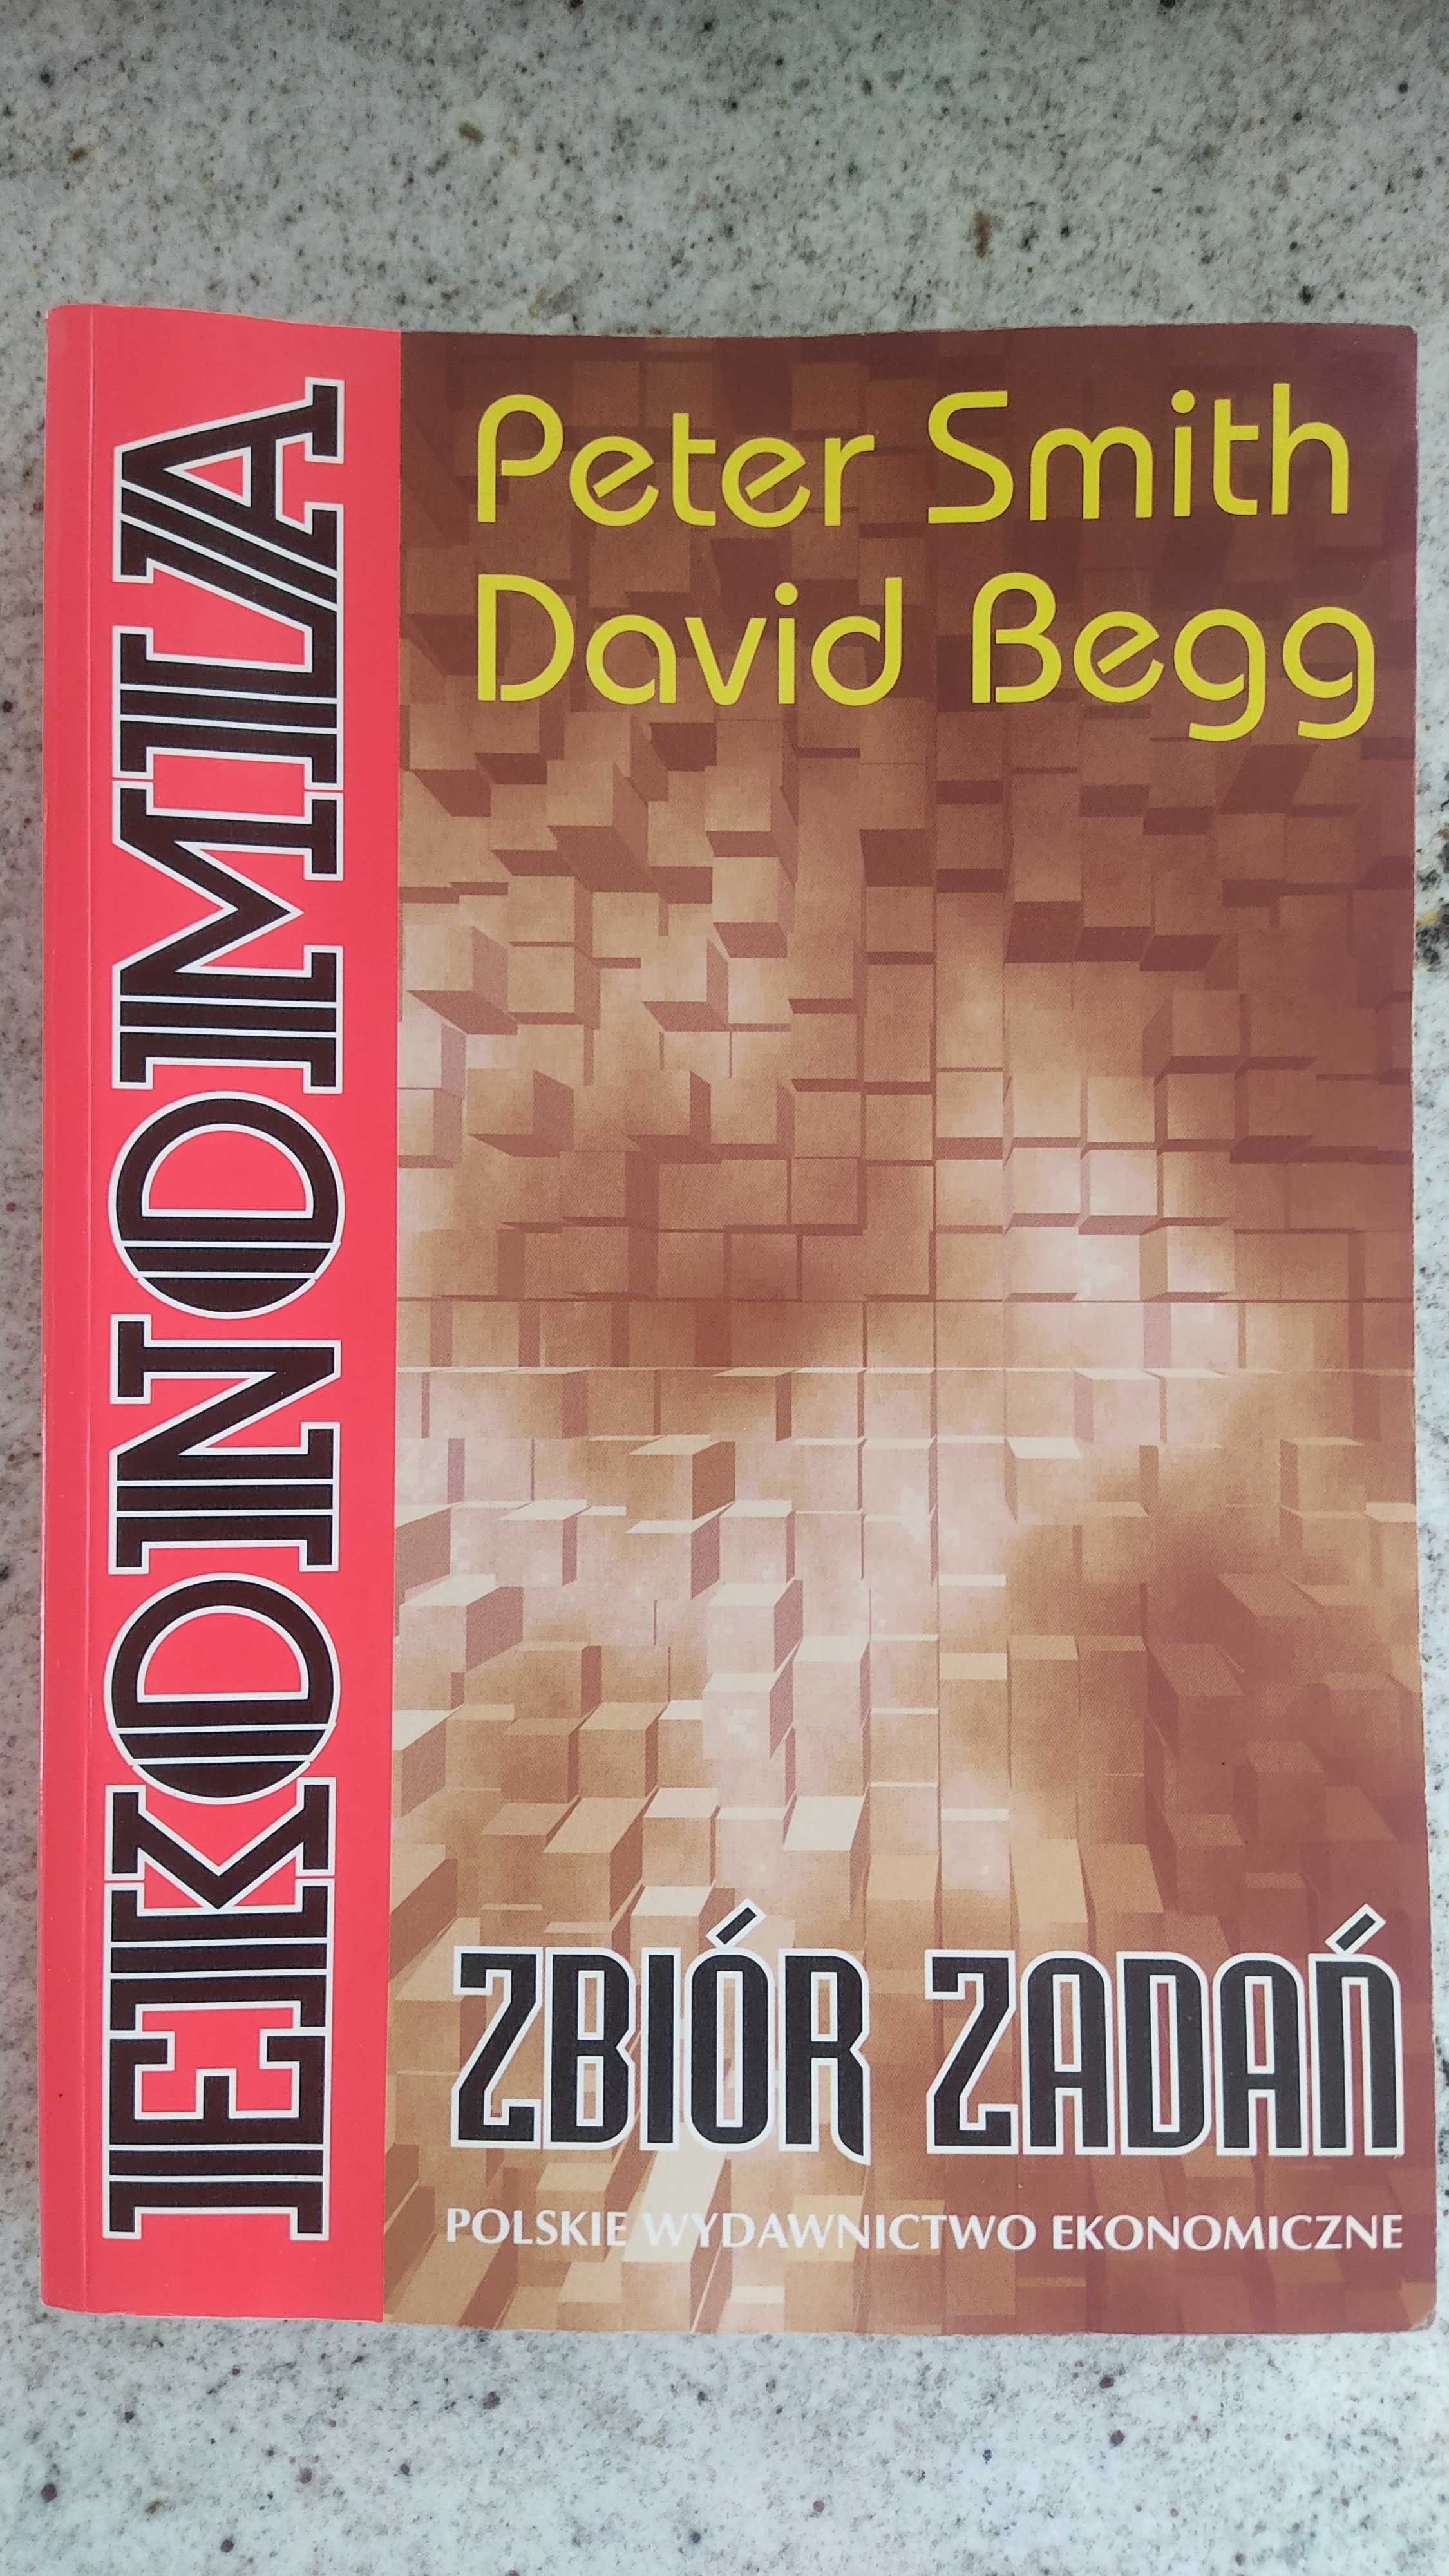 Ekonomia, zbiór zadań, David Begg Peter Smith